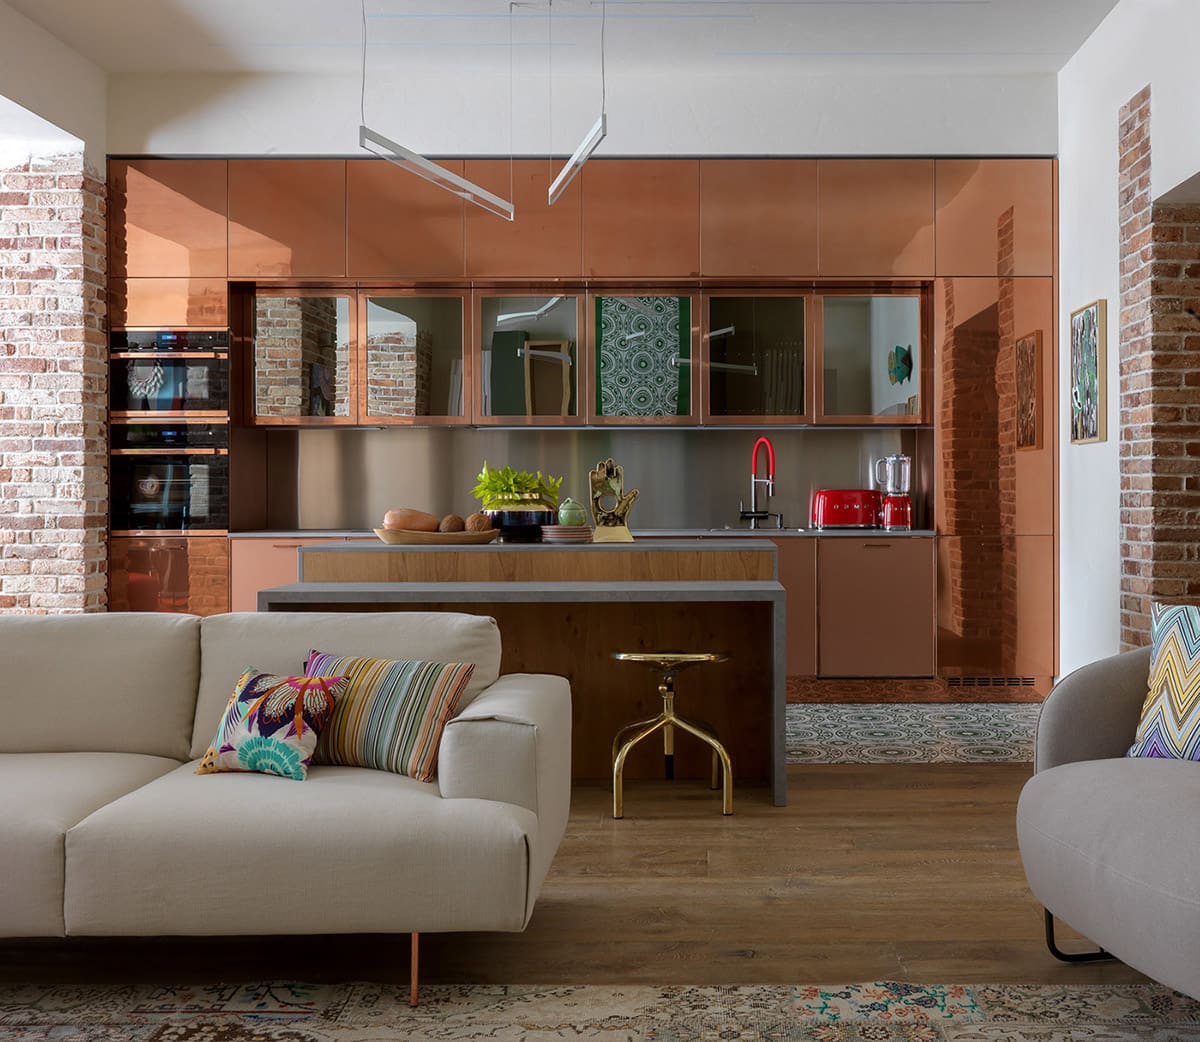 Стильный и современный интерьер кухни-гостиной в стиле лофт, где каждый элемент органично дополняет общий стиль, составляя единое целое пространство